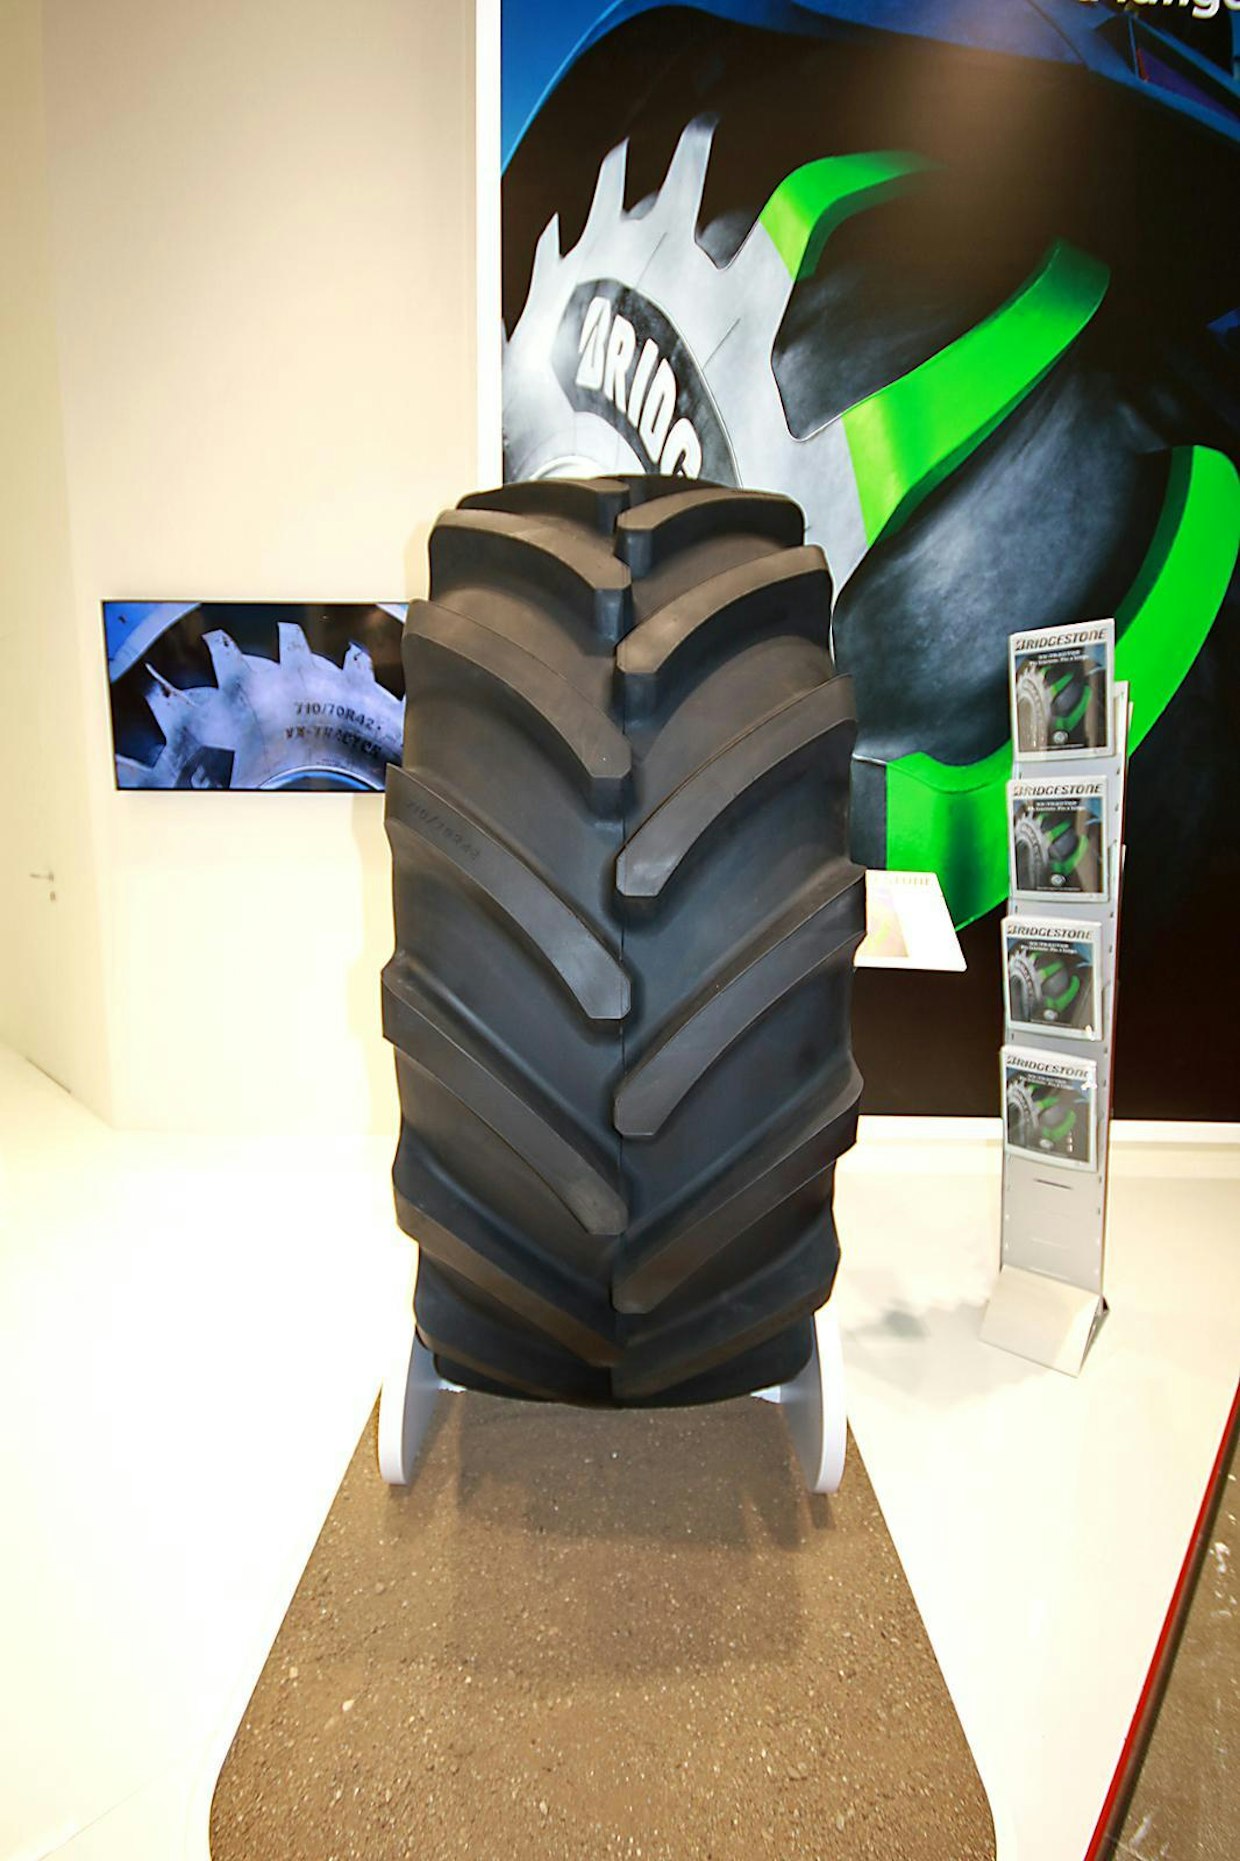 Bridgestone VX-TRACTOR-renkaassa on patentoitu ripamalli. Valmistaja on panostanut renkaan käyttöiän pidentämiseen erityisesti maantieajossa. VX-TRACTOR-renkaan rivassa on 20 % enemmän kumia kilpaileviin renkaisiin verrattuna, ja pintakuvion kokonaissyvyys on suurempi kuin kilpailijoilla. Rengas kestää suuret nopeudet ja raskaat kuormat, sillä se voidaan paineistaa jopa 2,4 baariin.